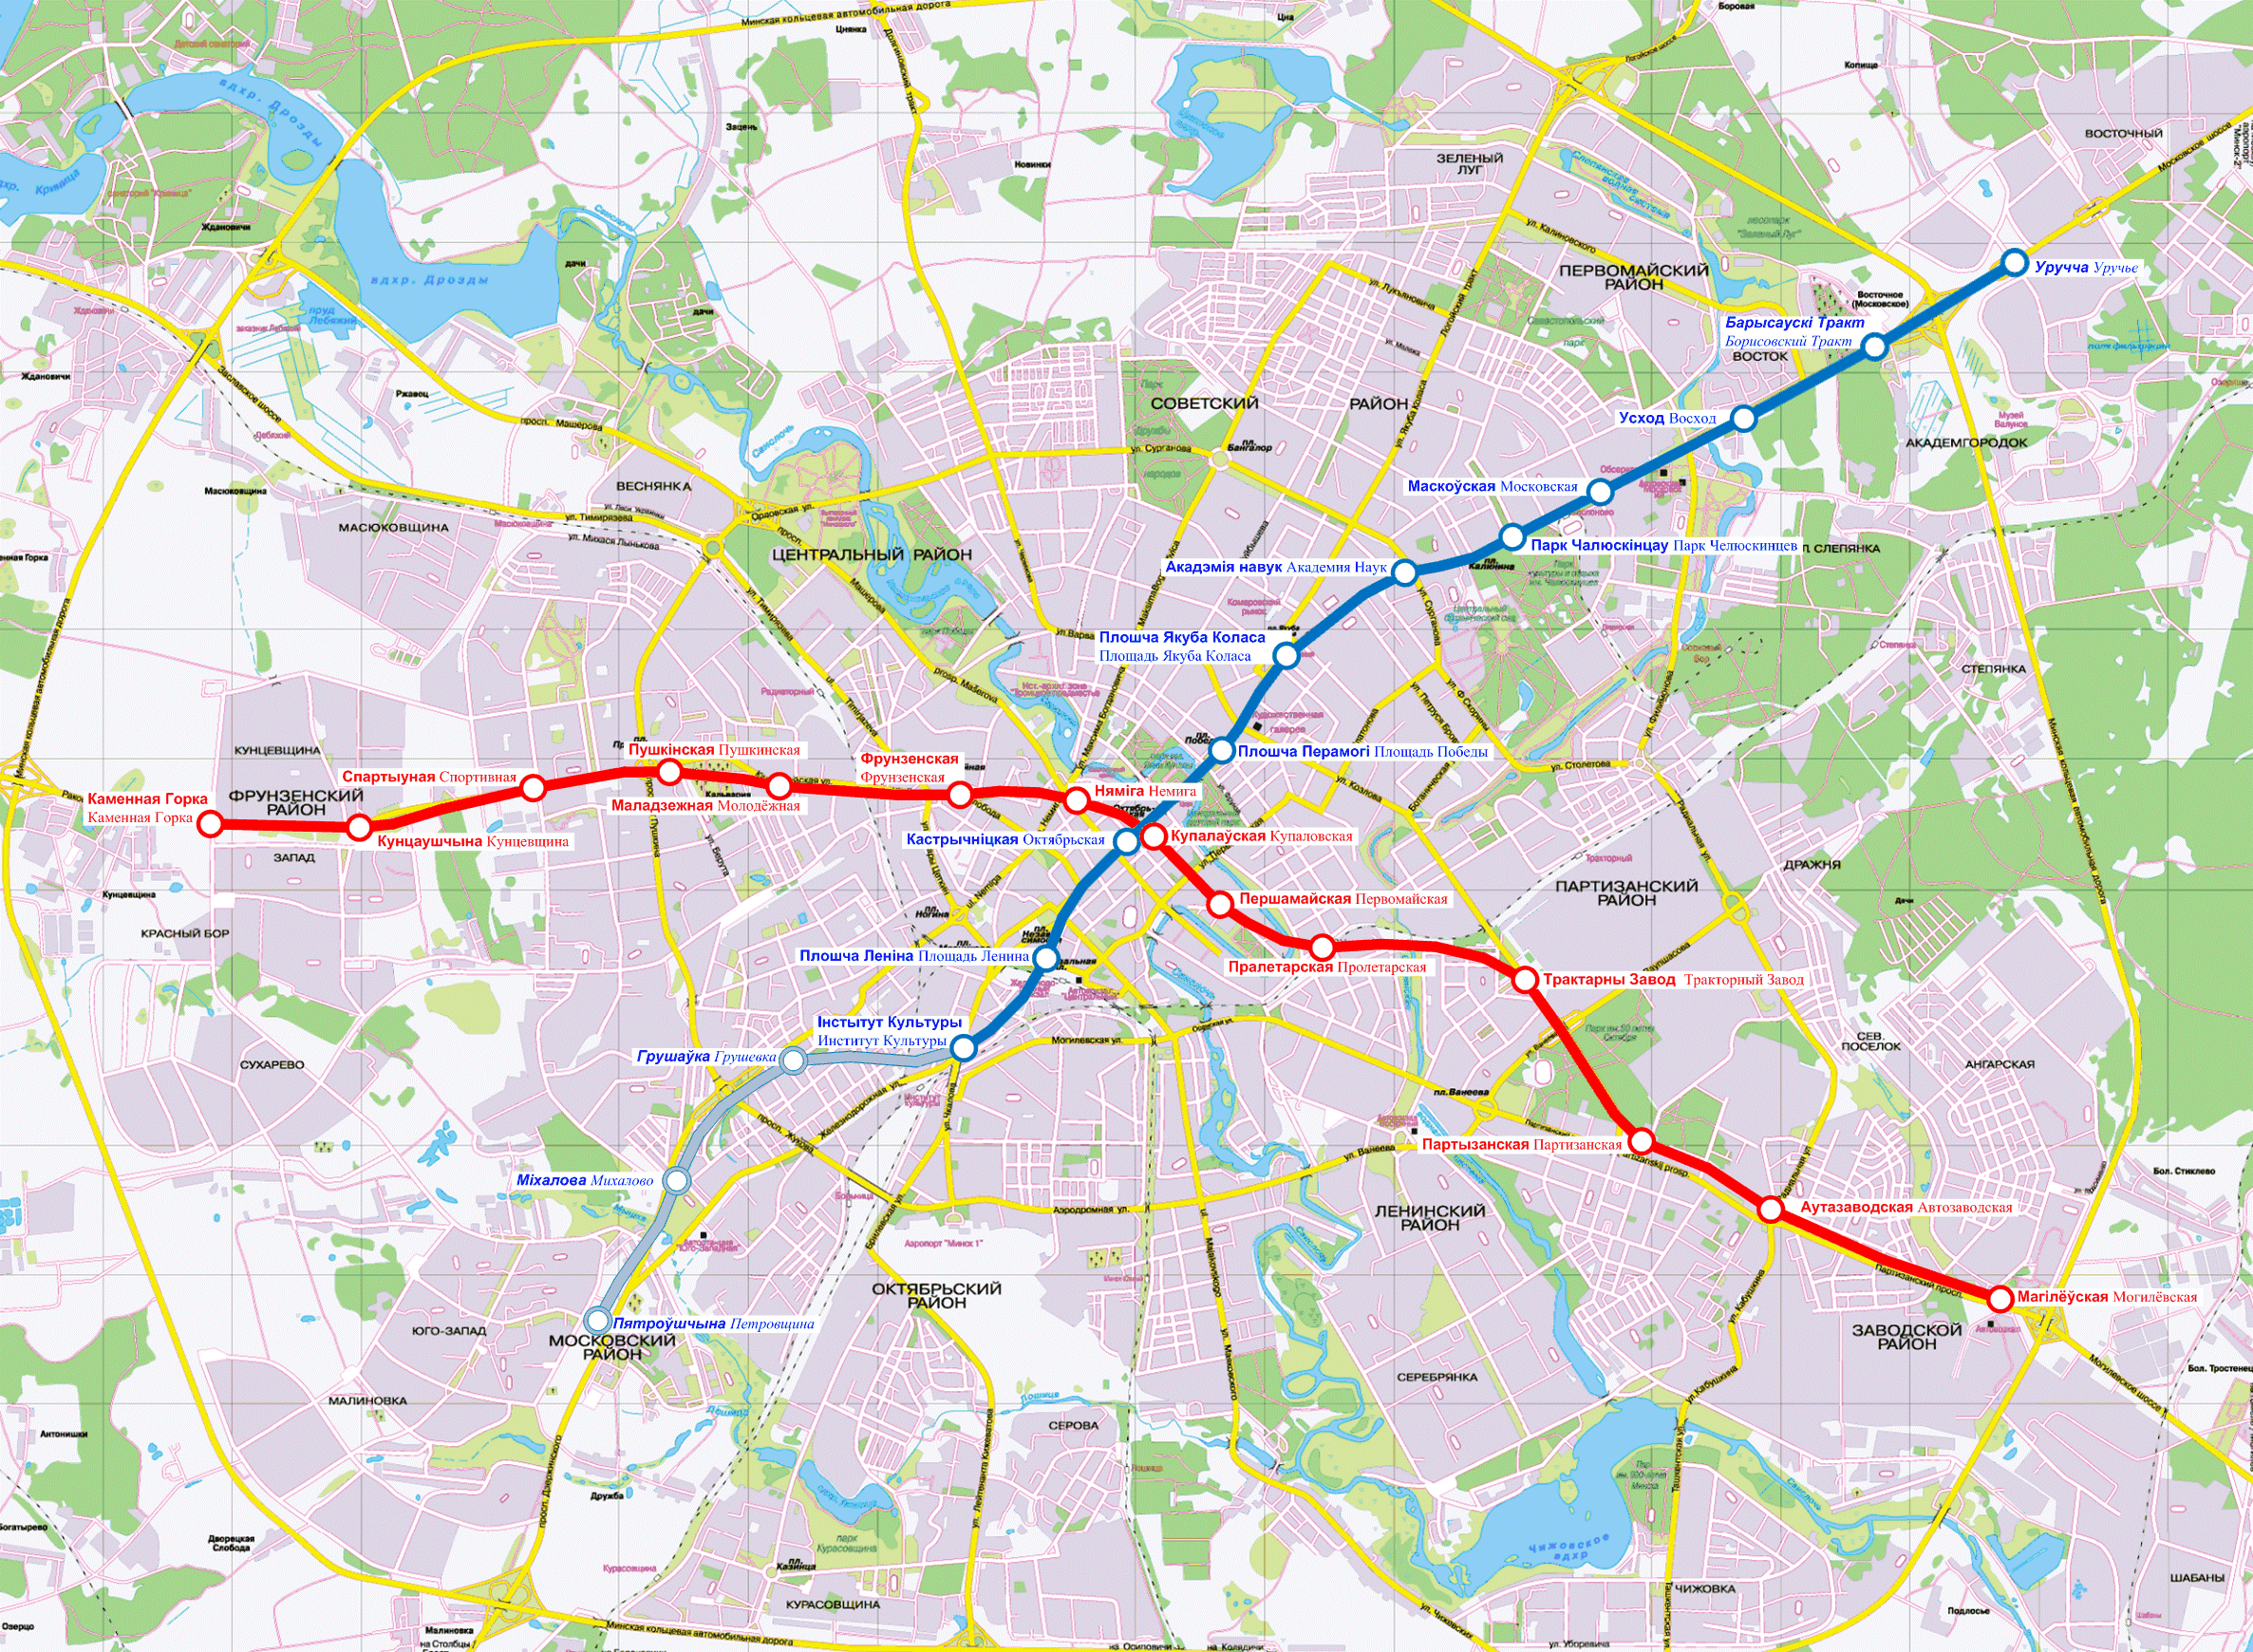 Metro map of Minsk 